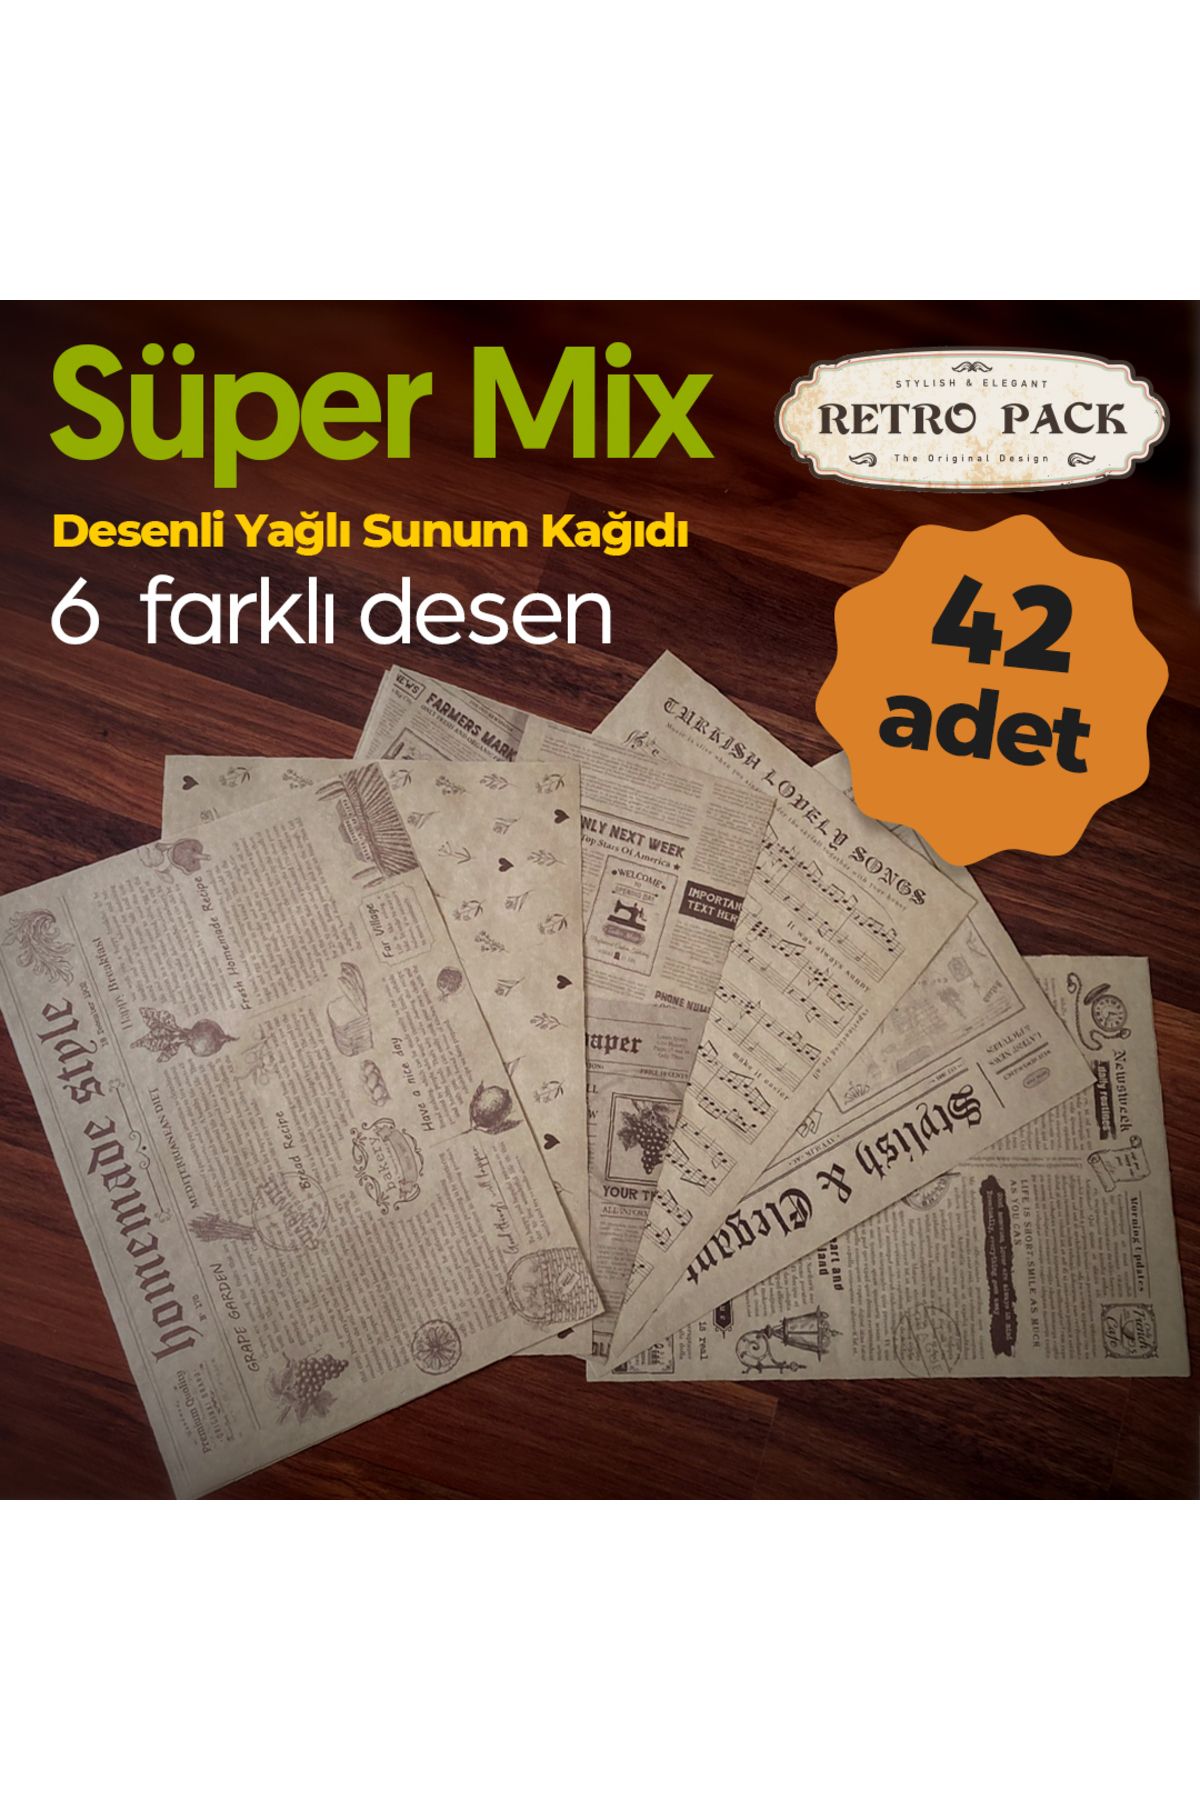 Retro Pack Süper Mix Kutu - 1 Kutuda 42 Adet Desenli Yağlı Kağıt - 6 Farklı Desen